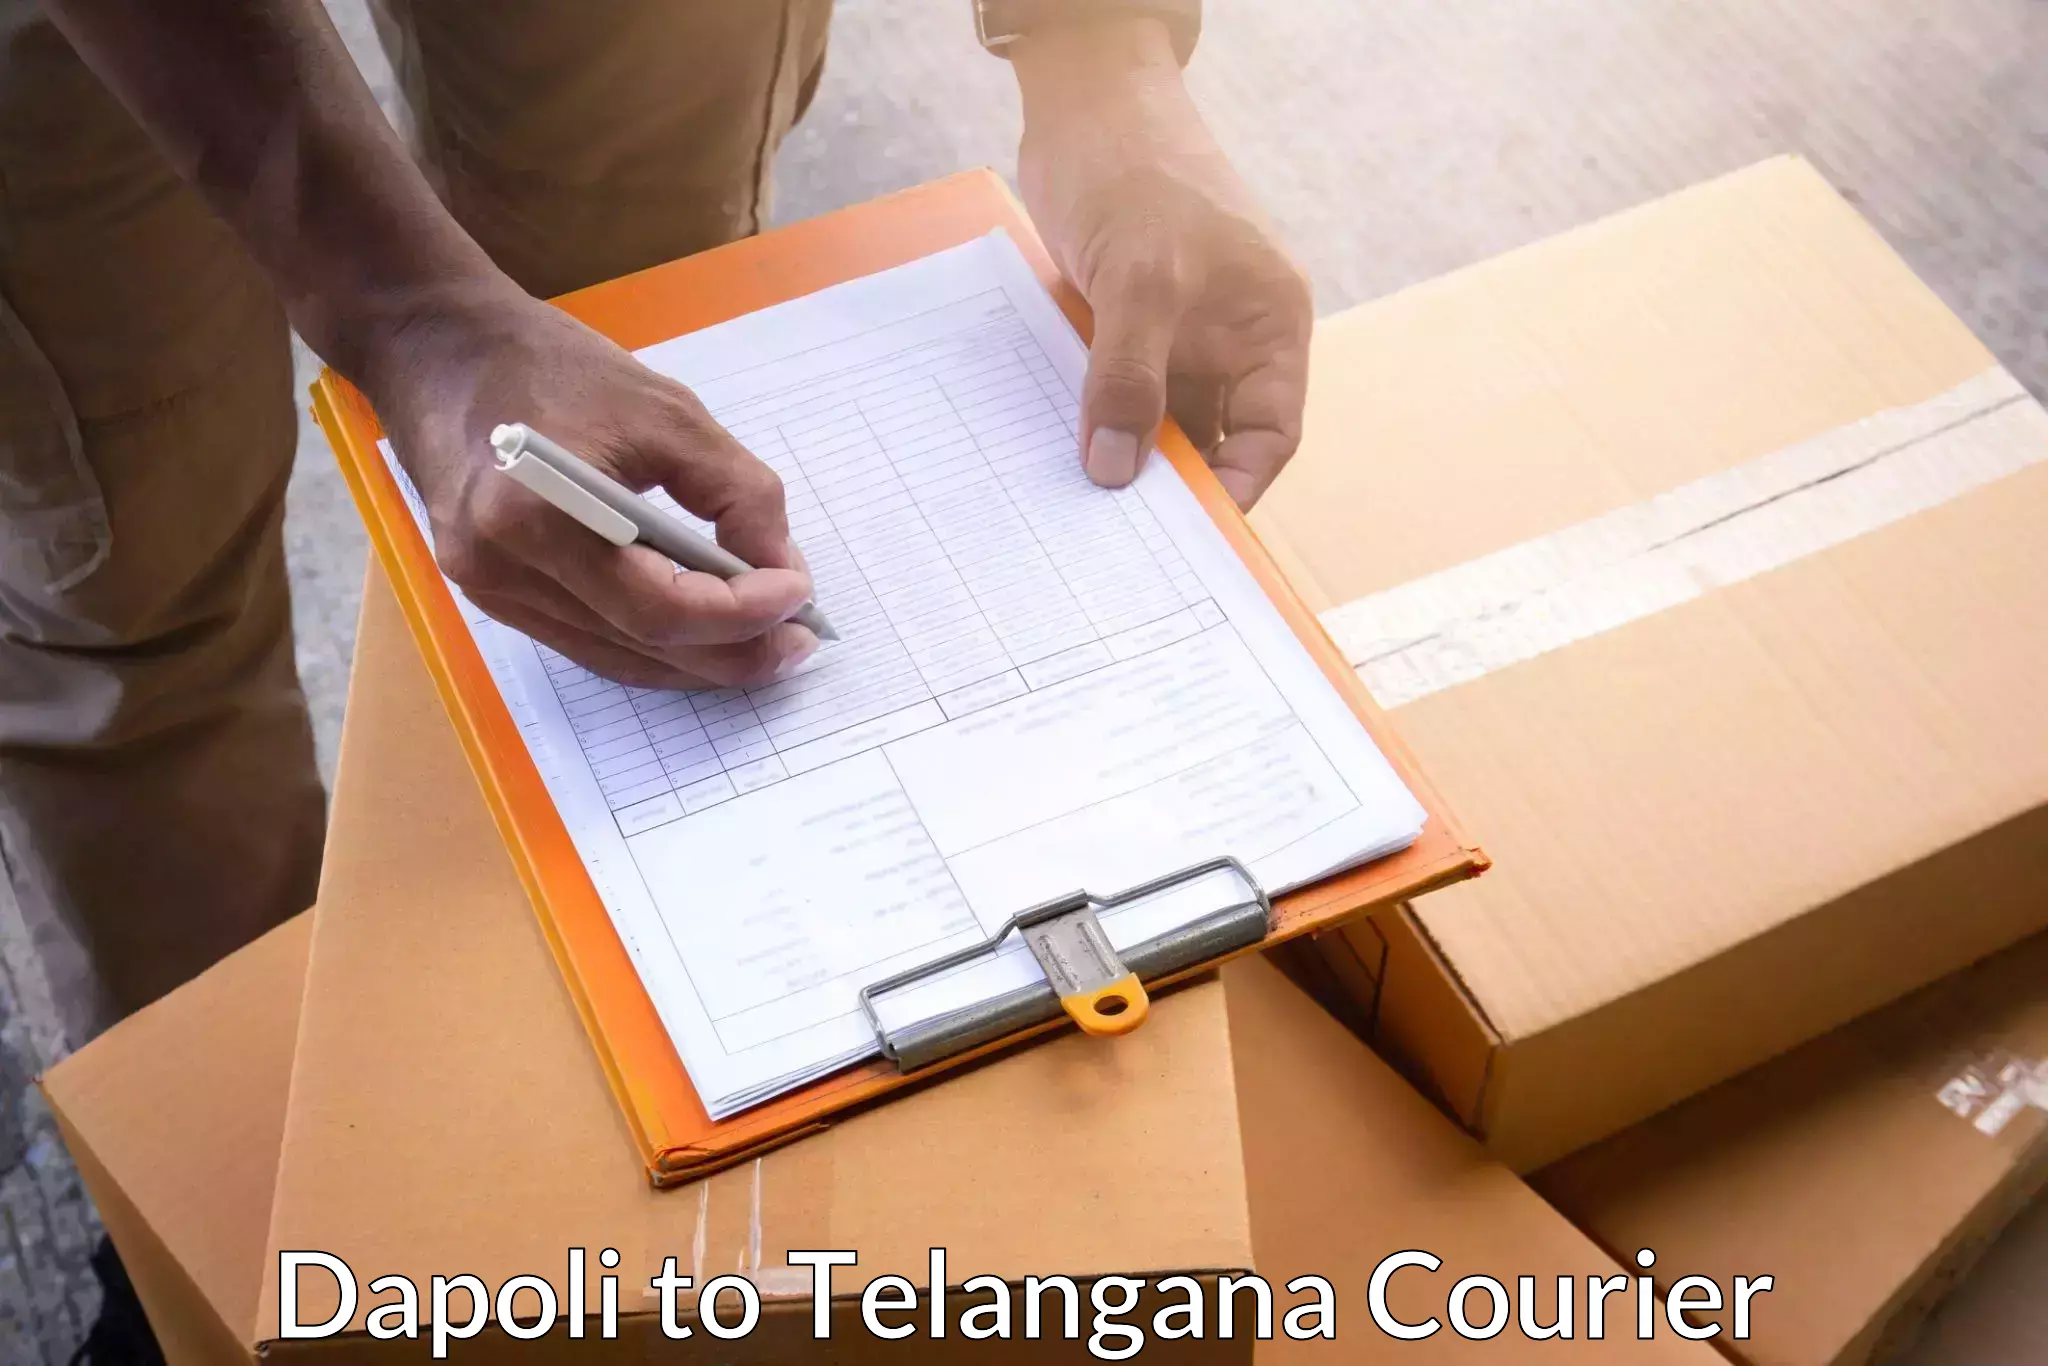 Urgent courier needs Dapoli to Telangana